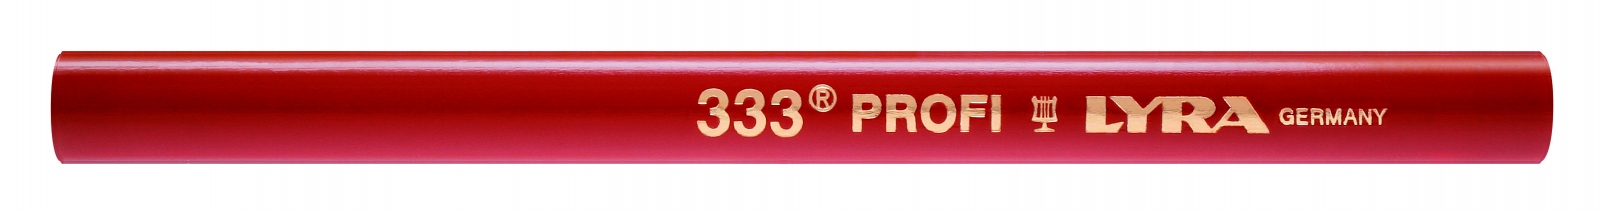 Crayon de charpentier mine Aniline ovale 24 cm PROFI 334S Lyra 